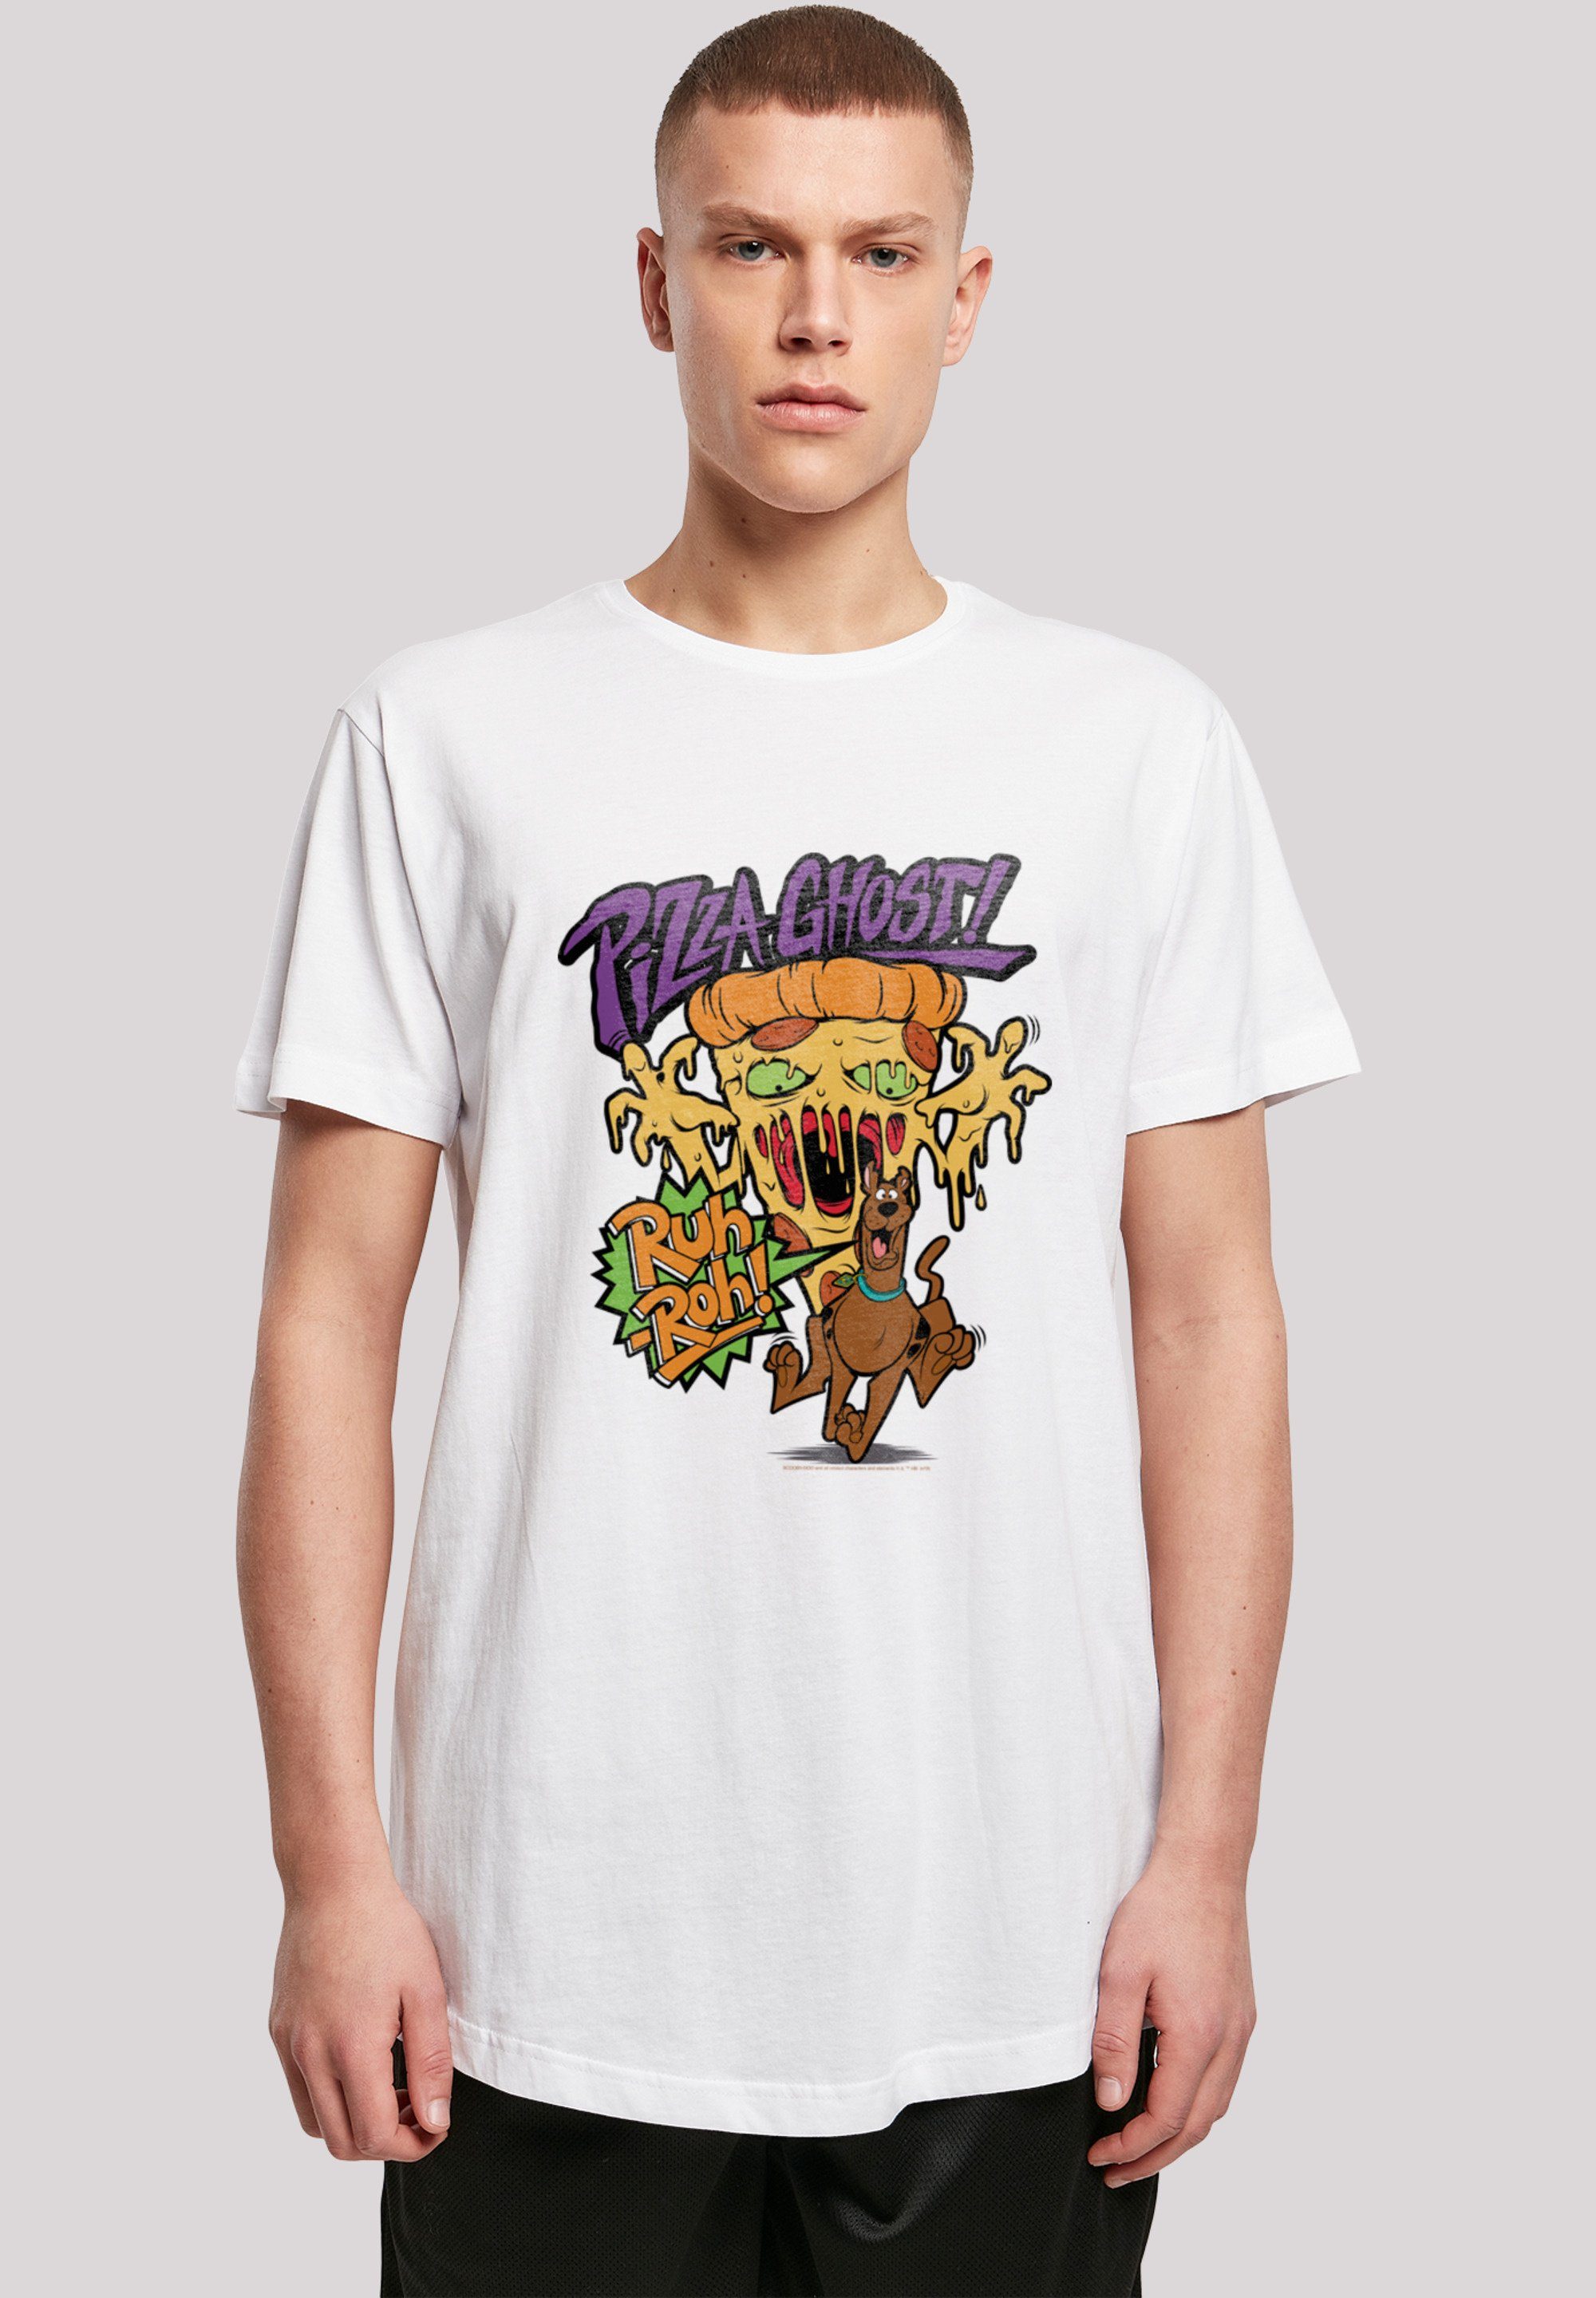 Scooby Print Pizza Doo F4NT4STIC Geist weiß T-Shirt Ghost